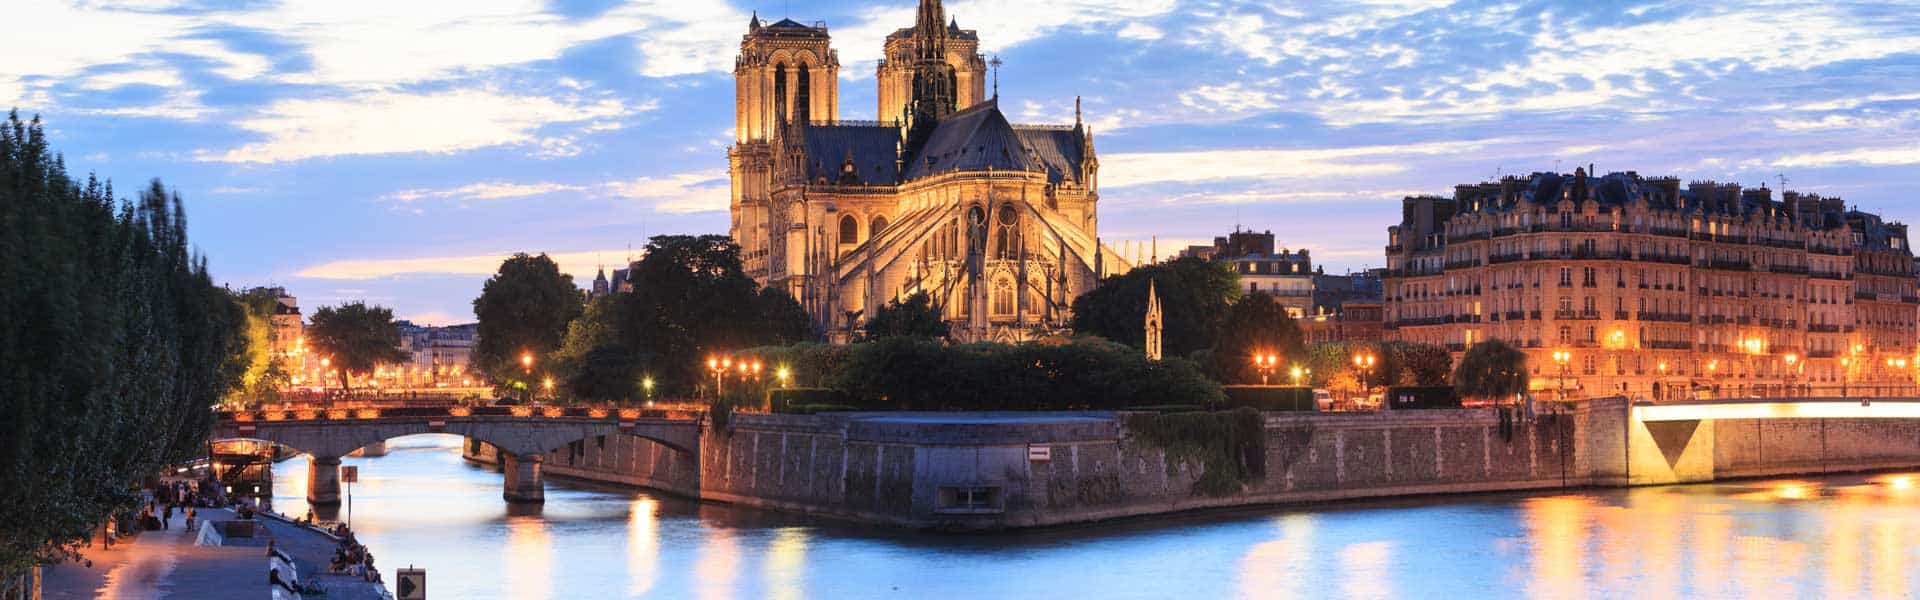 Ob der Glöckner wohl immer noch in dem geschichtsträchtigen Gebäude unterwegs ist ...? Finden Sie es heraus – in der Kathedrale Notre Dame in Paris